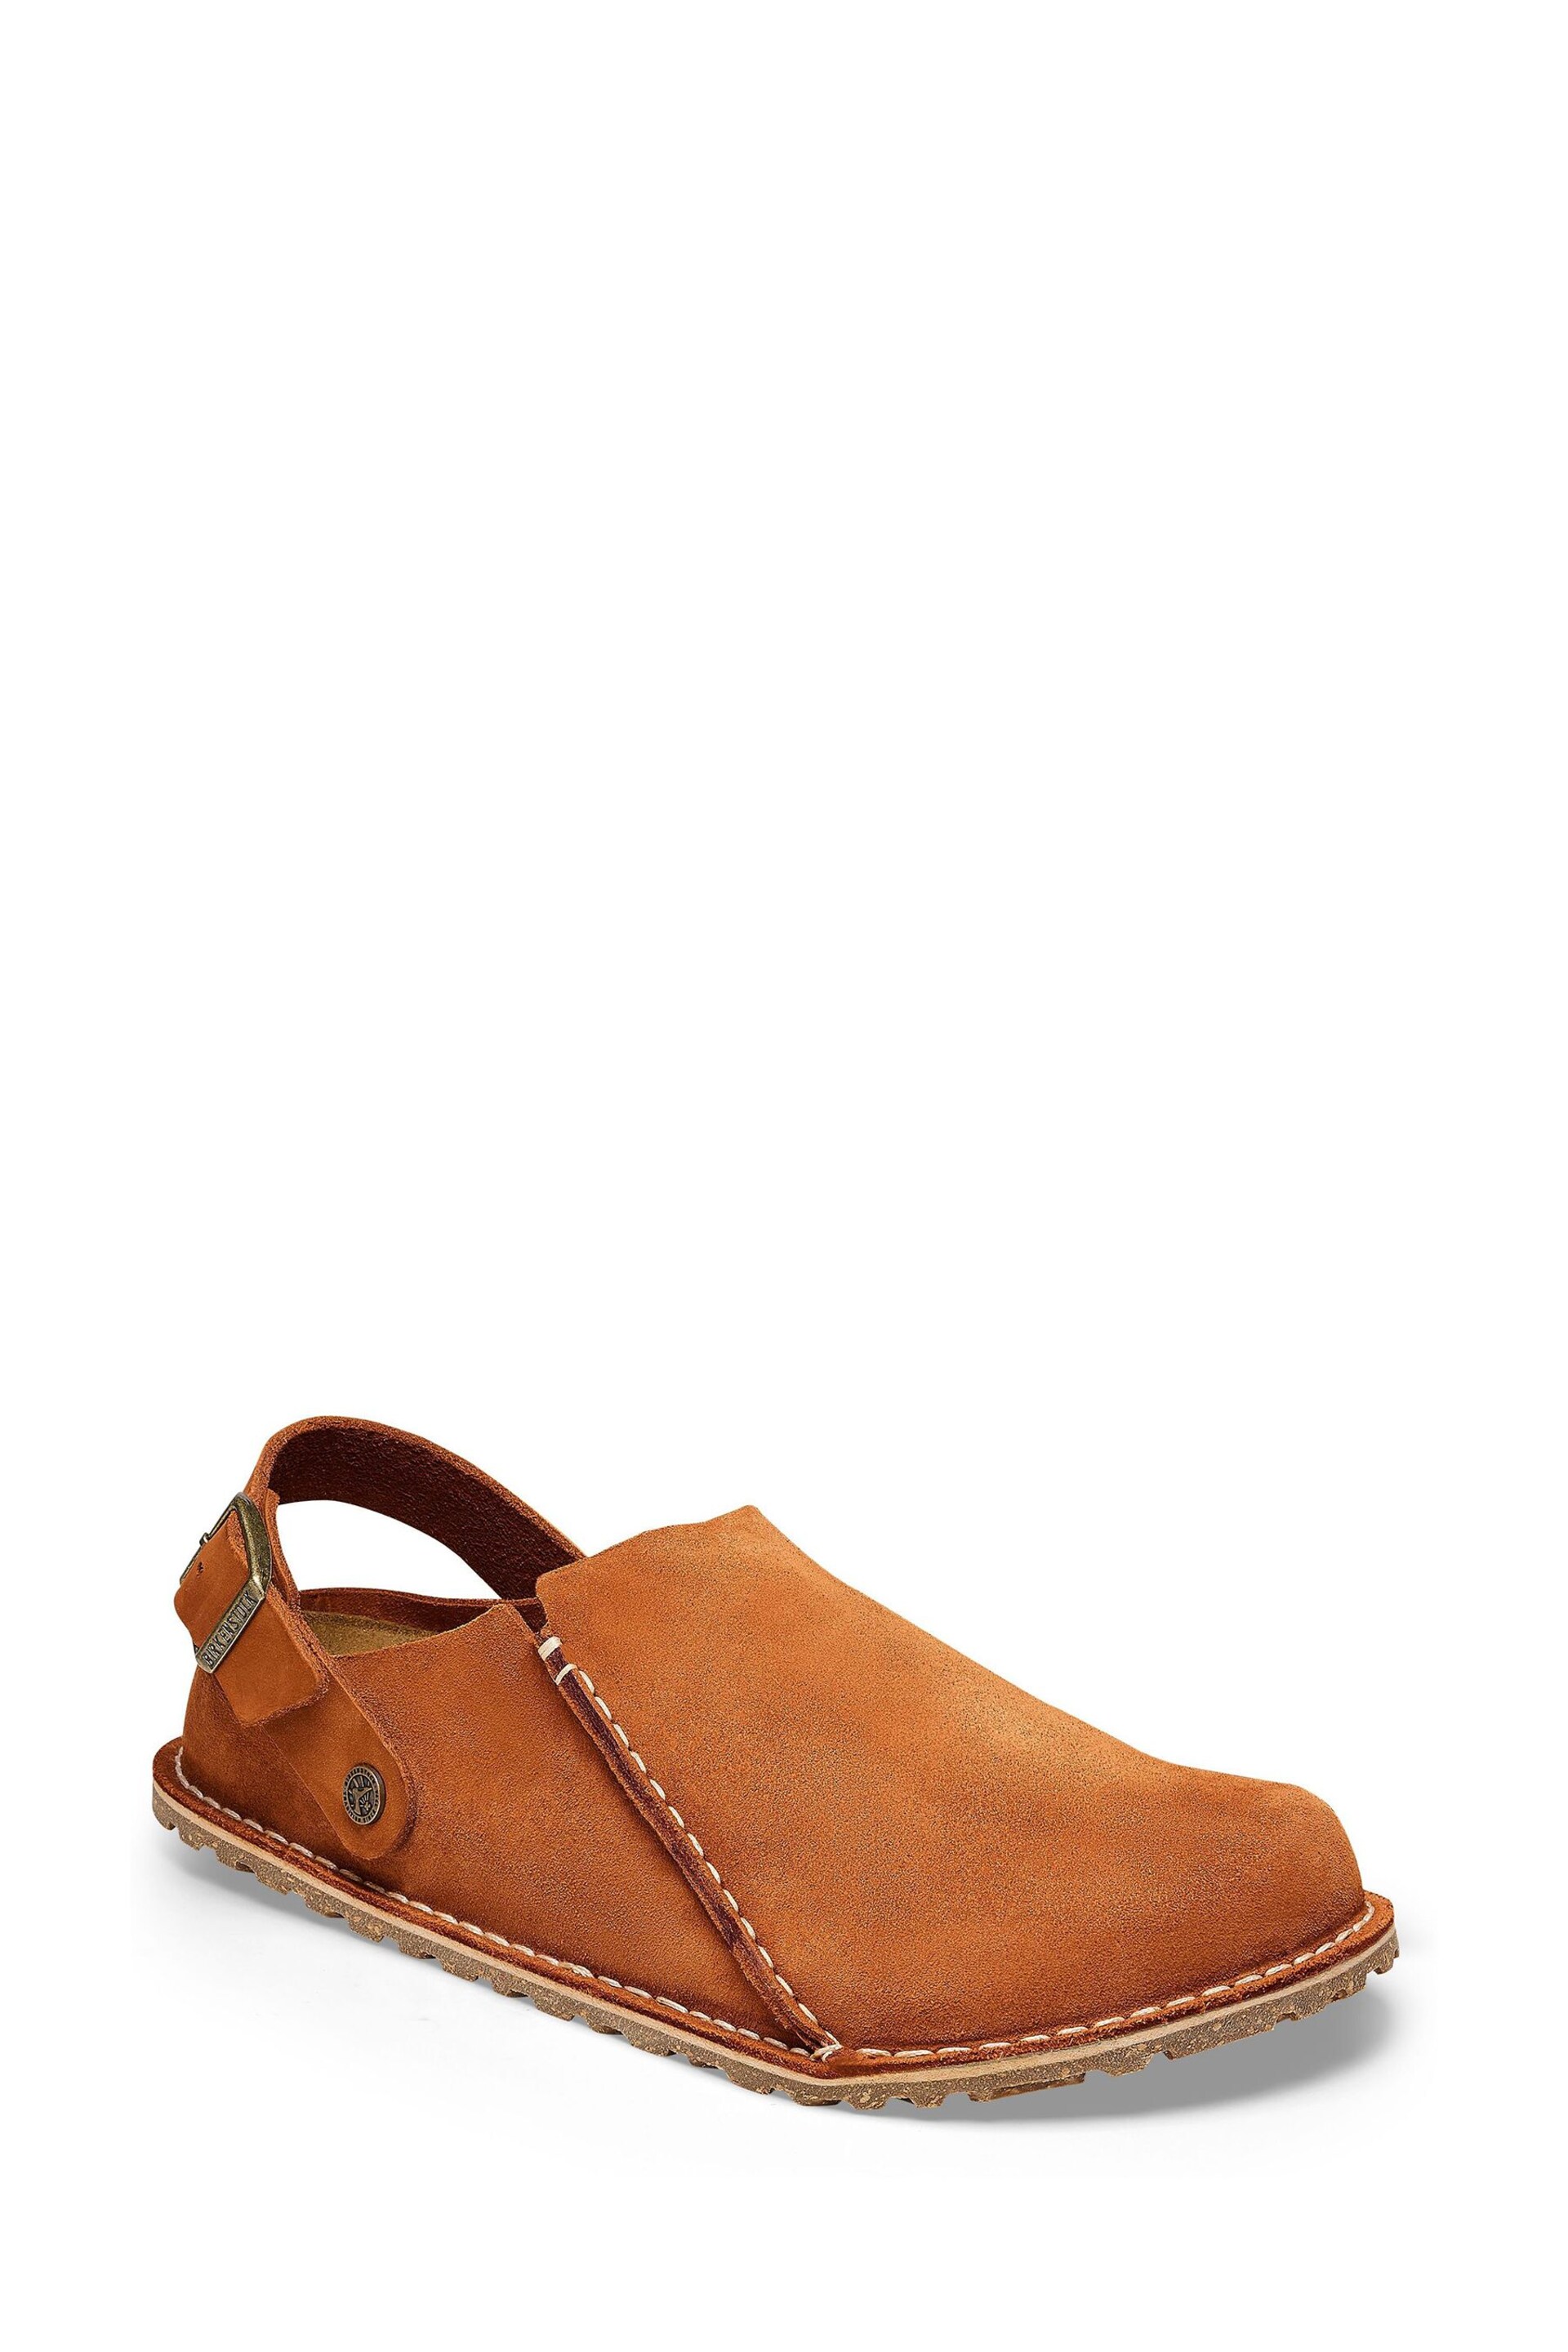 Birkenstock Lutry Premium Suede Shoes - Image 1 of 5